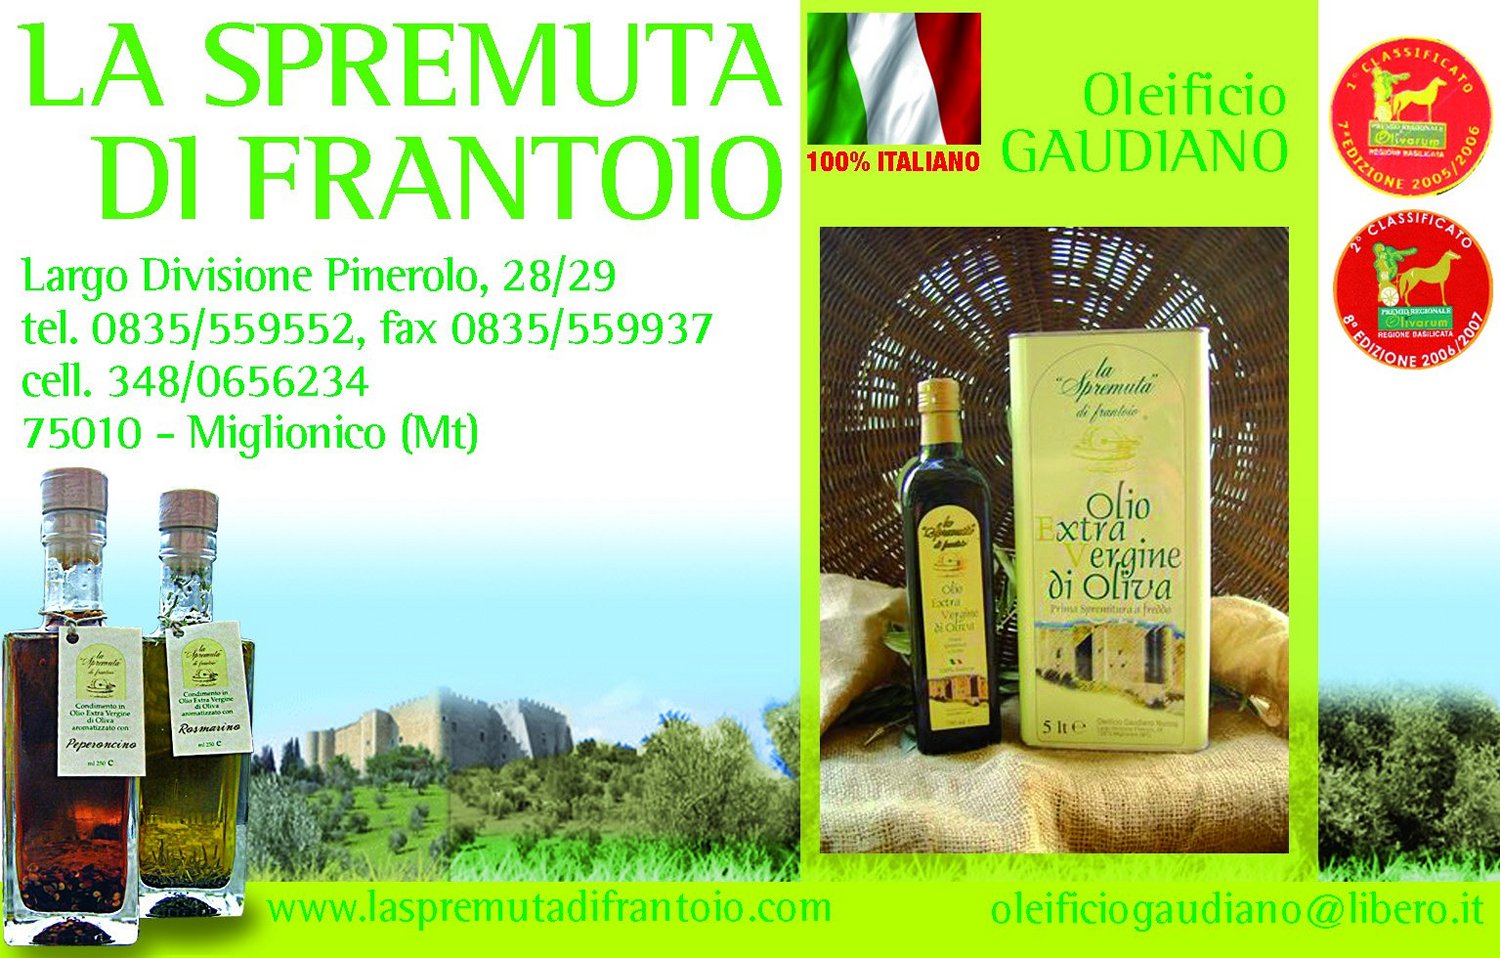 La Spremuta di Frantoio - Oleificio Gaudiano a MIGLIONICO website www.LaSpremutadiFrantoio.com